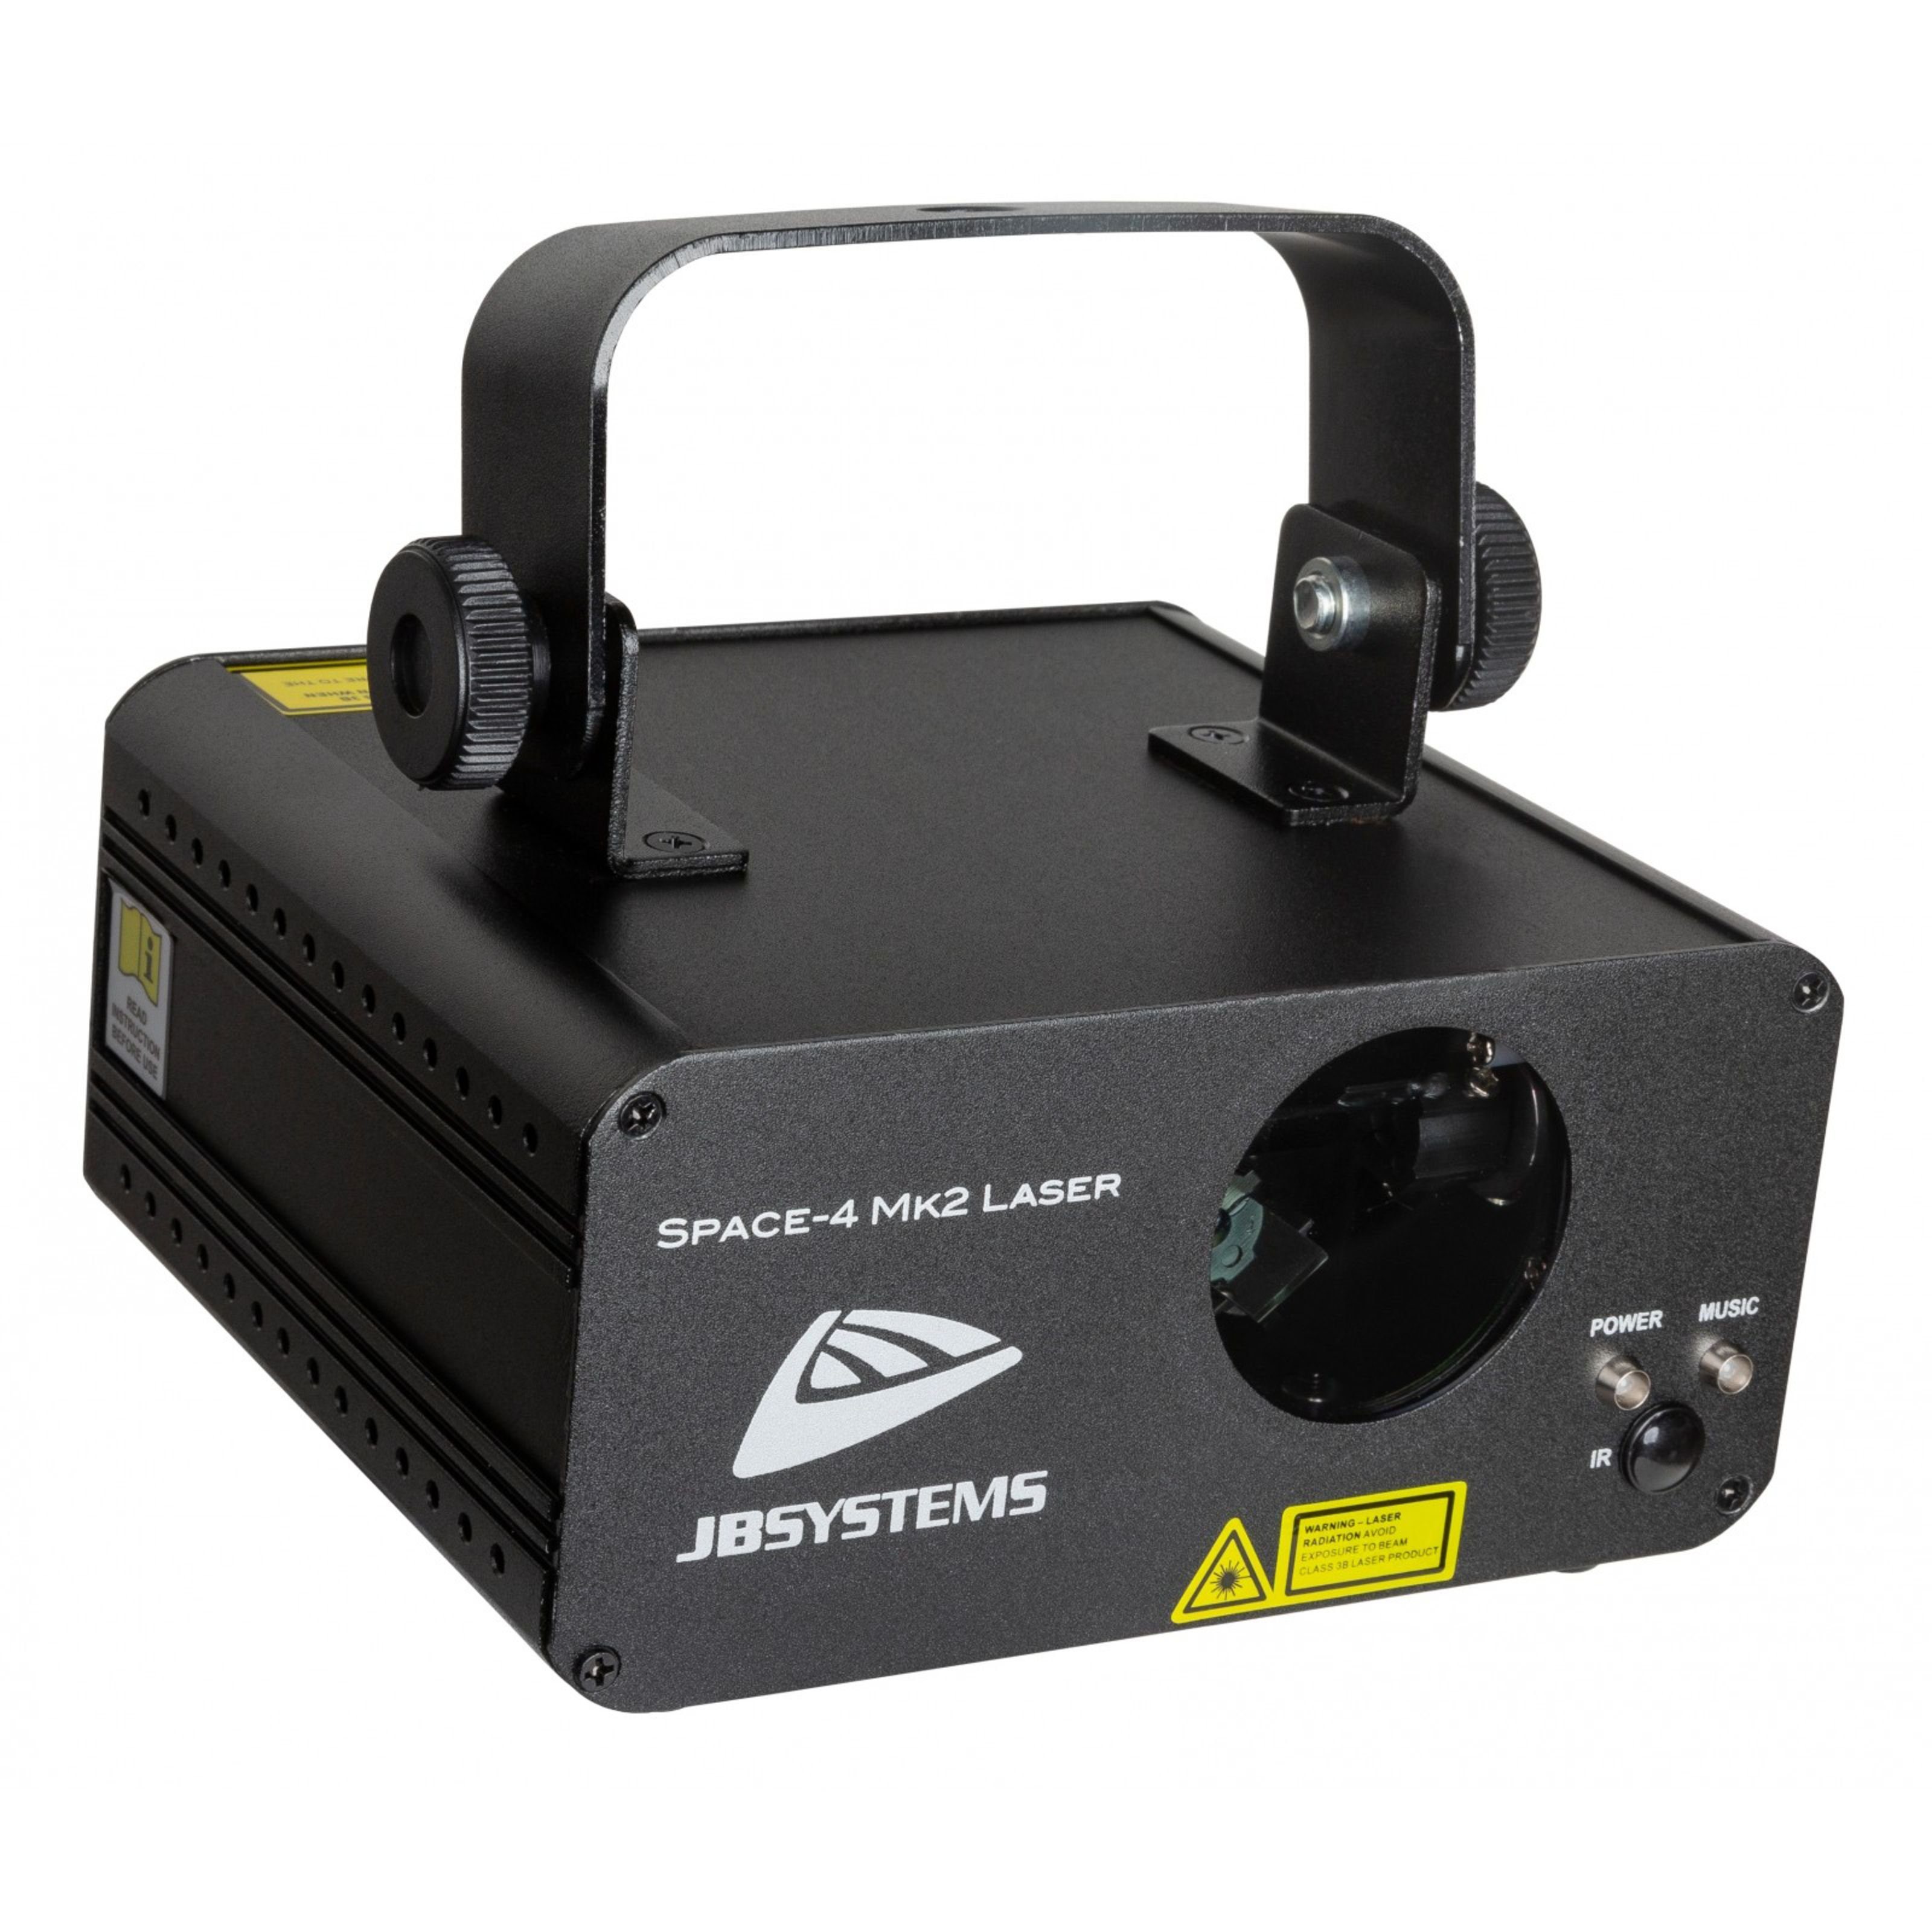 JB Systems Laserstrahler, Space-4 Mk2 Laser - Einfarbiger Laser